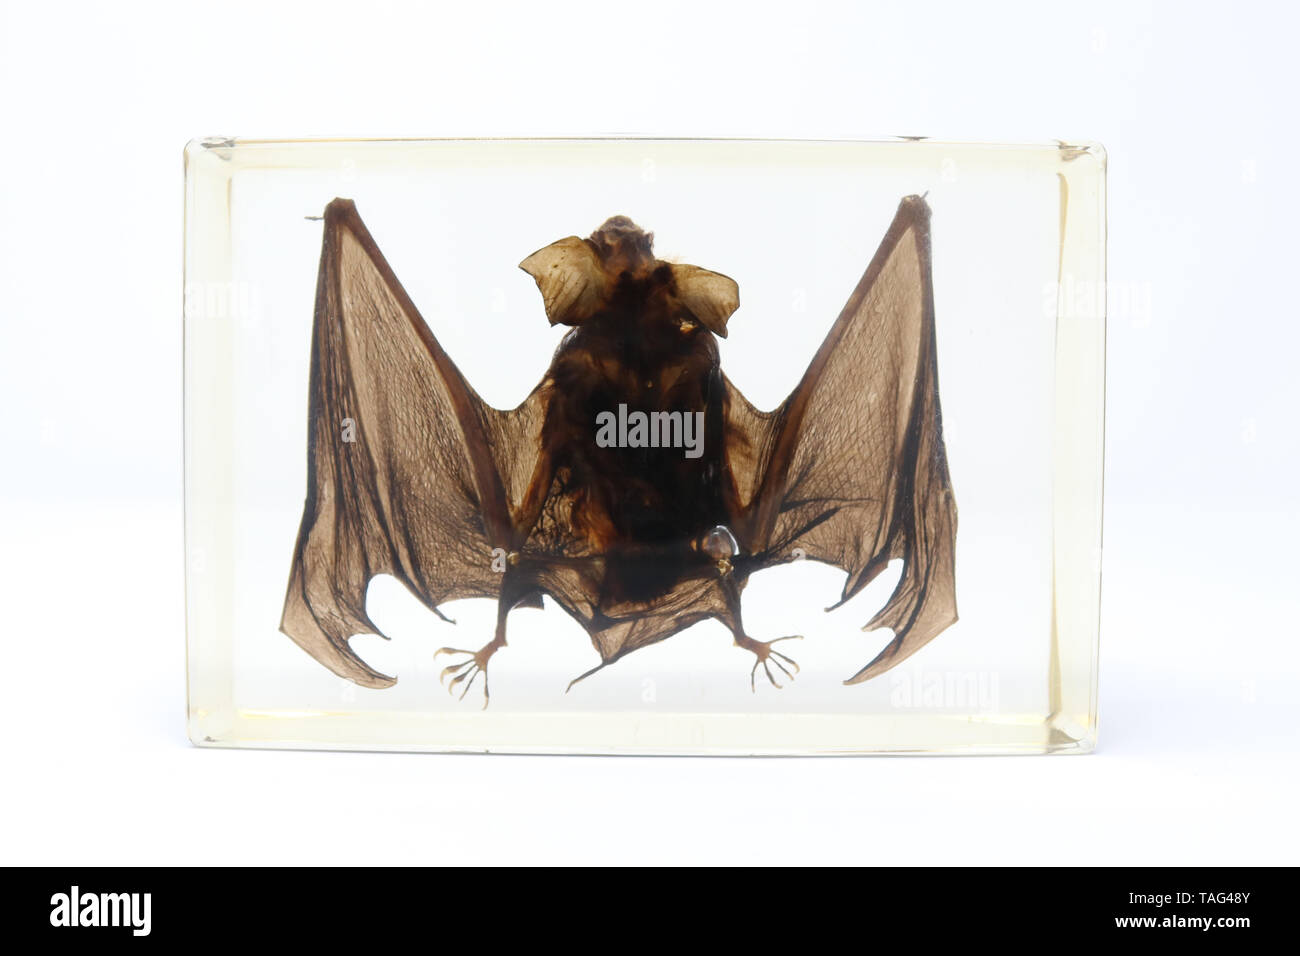 Preserved Bat Specimen in Lucite Resin Stock Photo